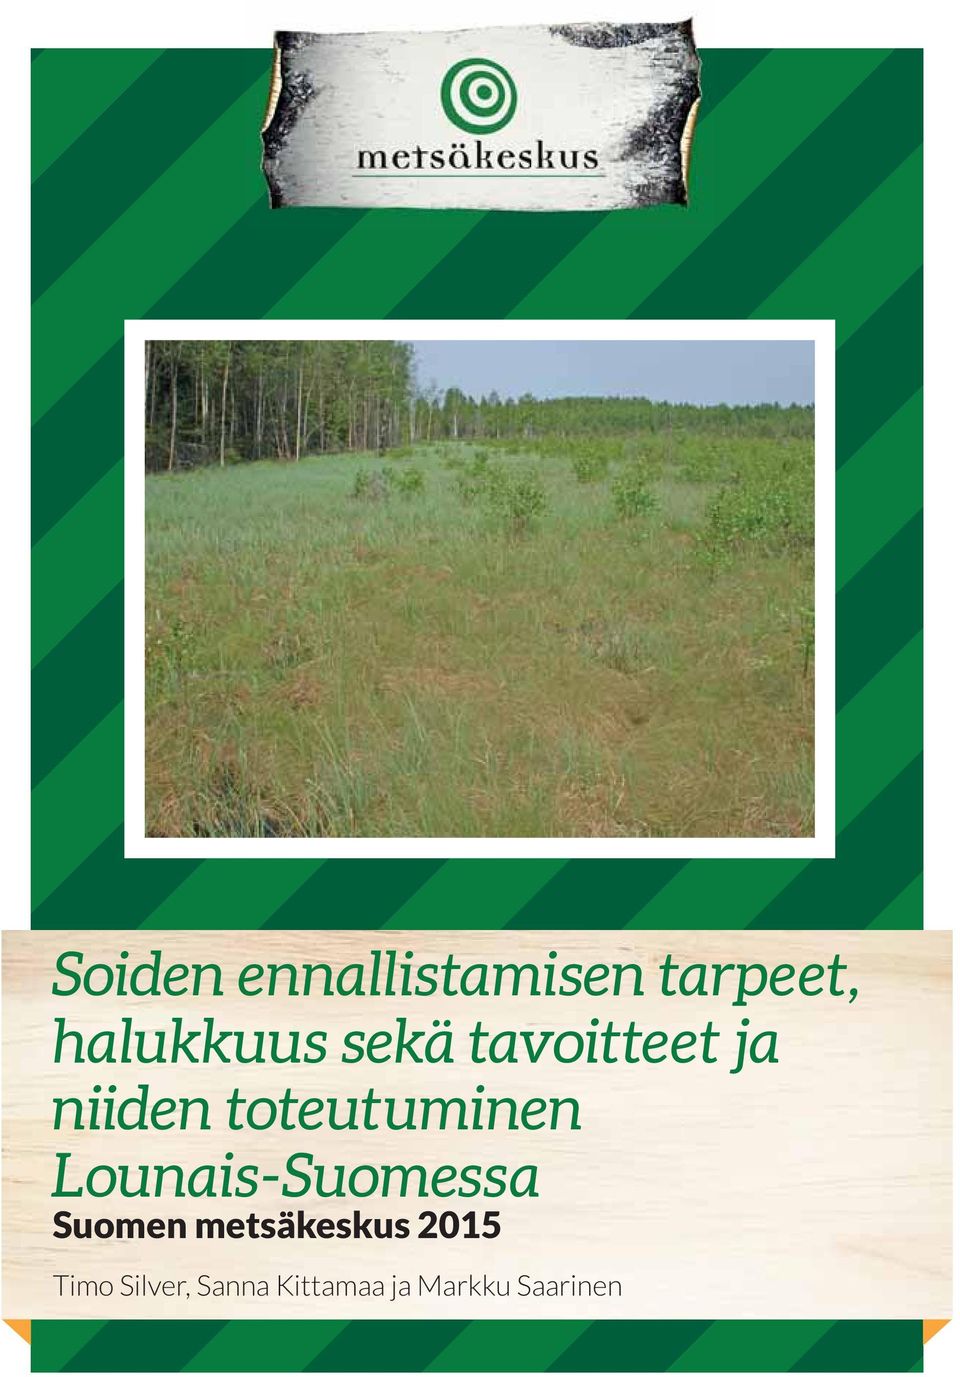 Lounais-Suomessa Suomen metsäkeskus 2015